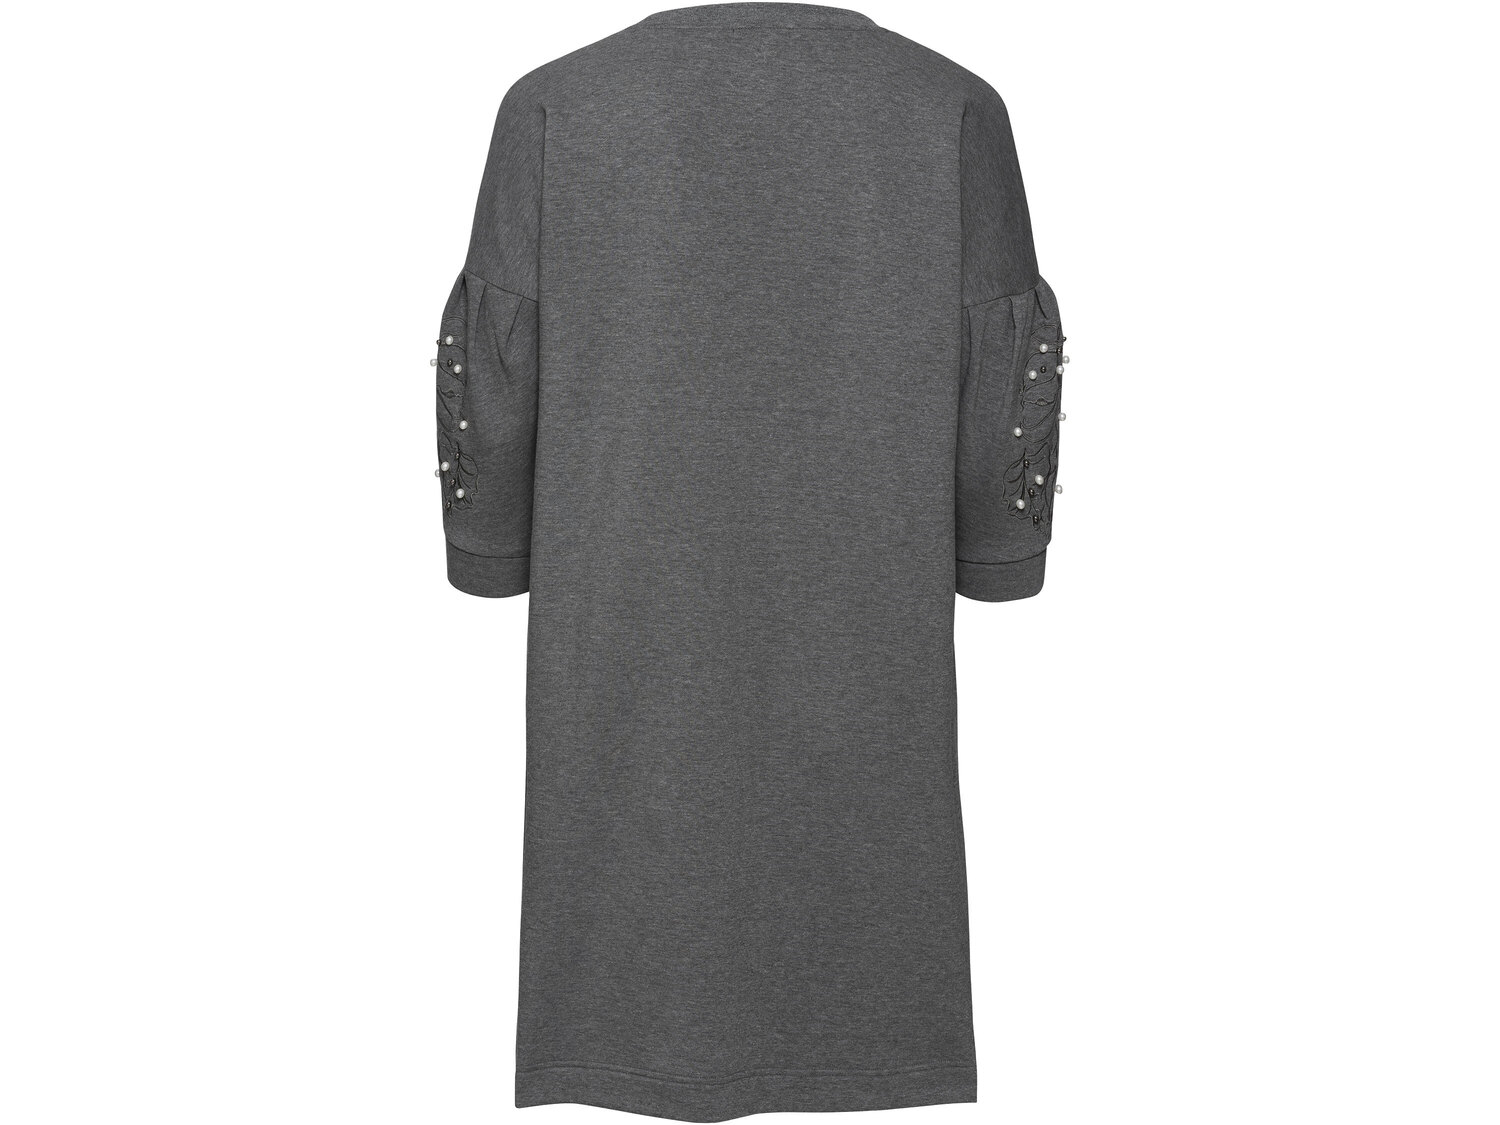 Sukienka z tkaniny dresowej Esmara, cena 34,99 PLN 
- rozmiary: L-3XL
- wysoka zawartość ...